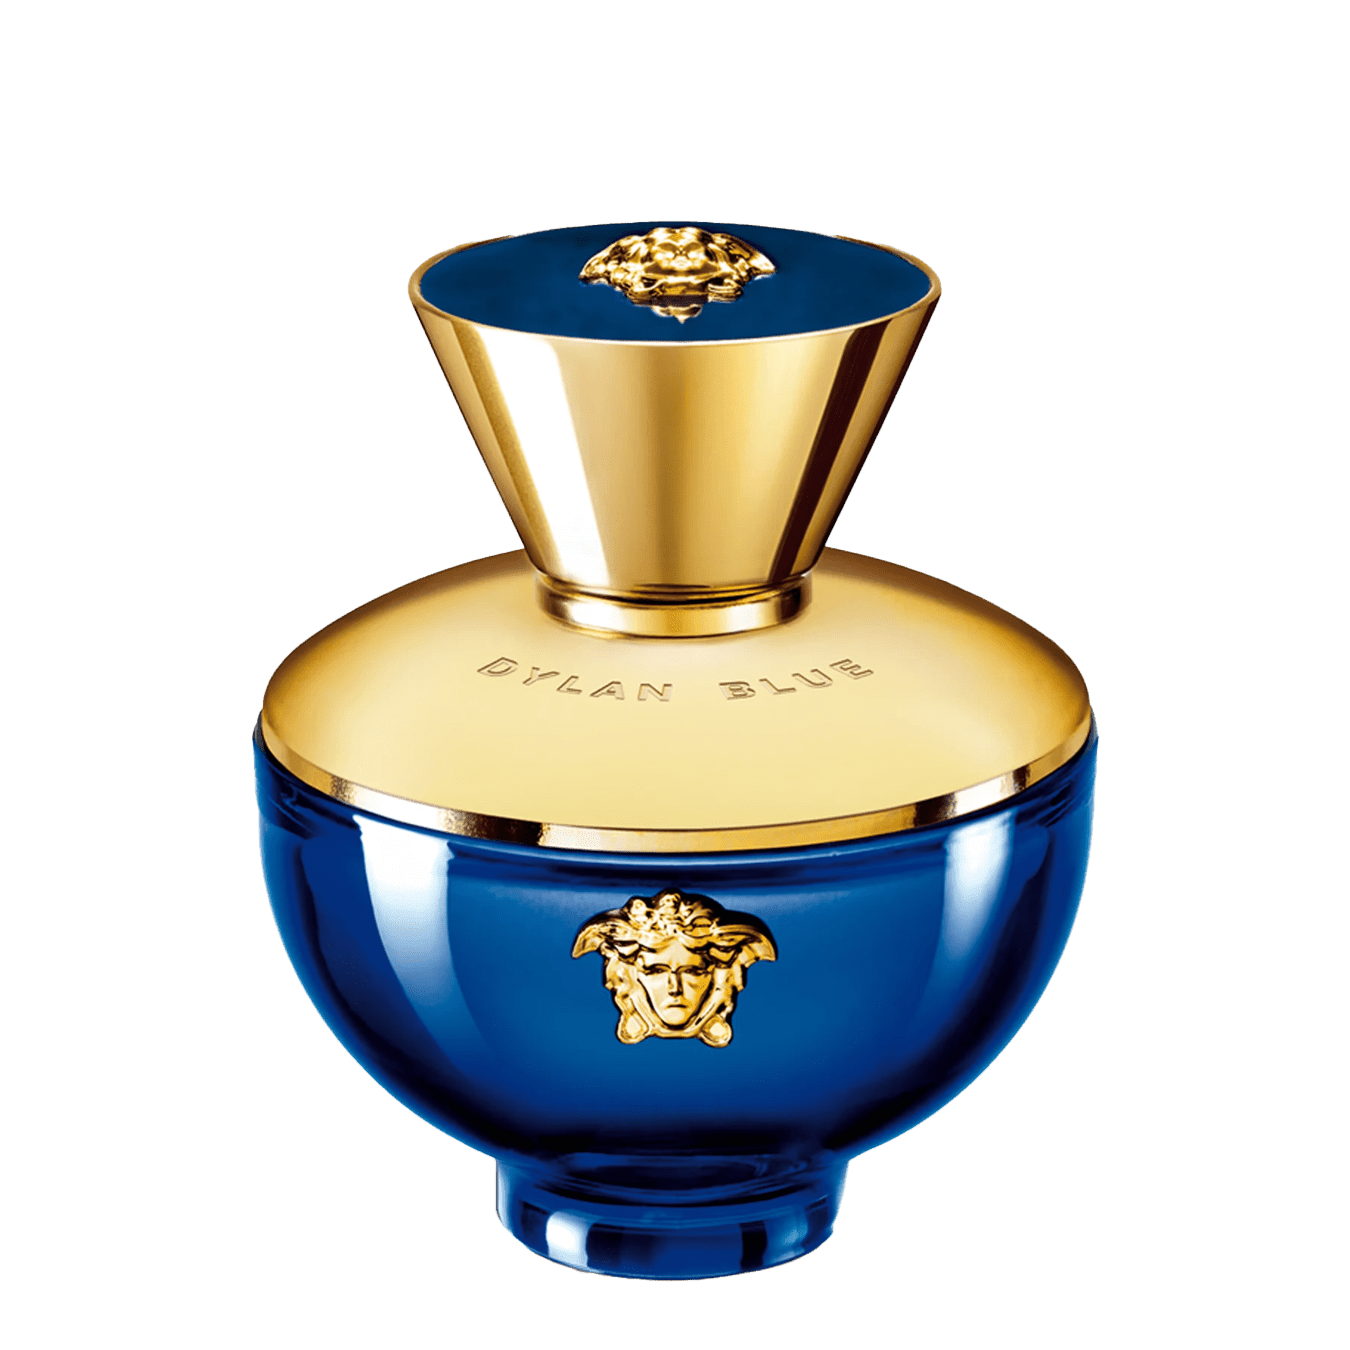 Versace - Dylan Blue 3.4-Oz. Eau de Parjum - Women - Fragrance